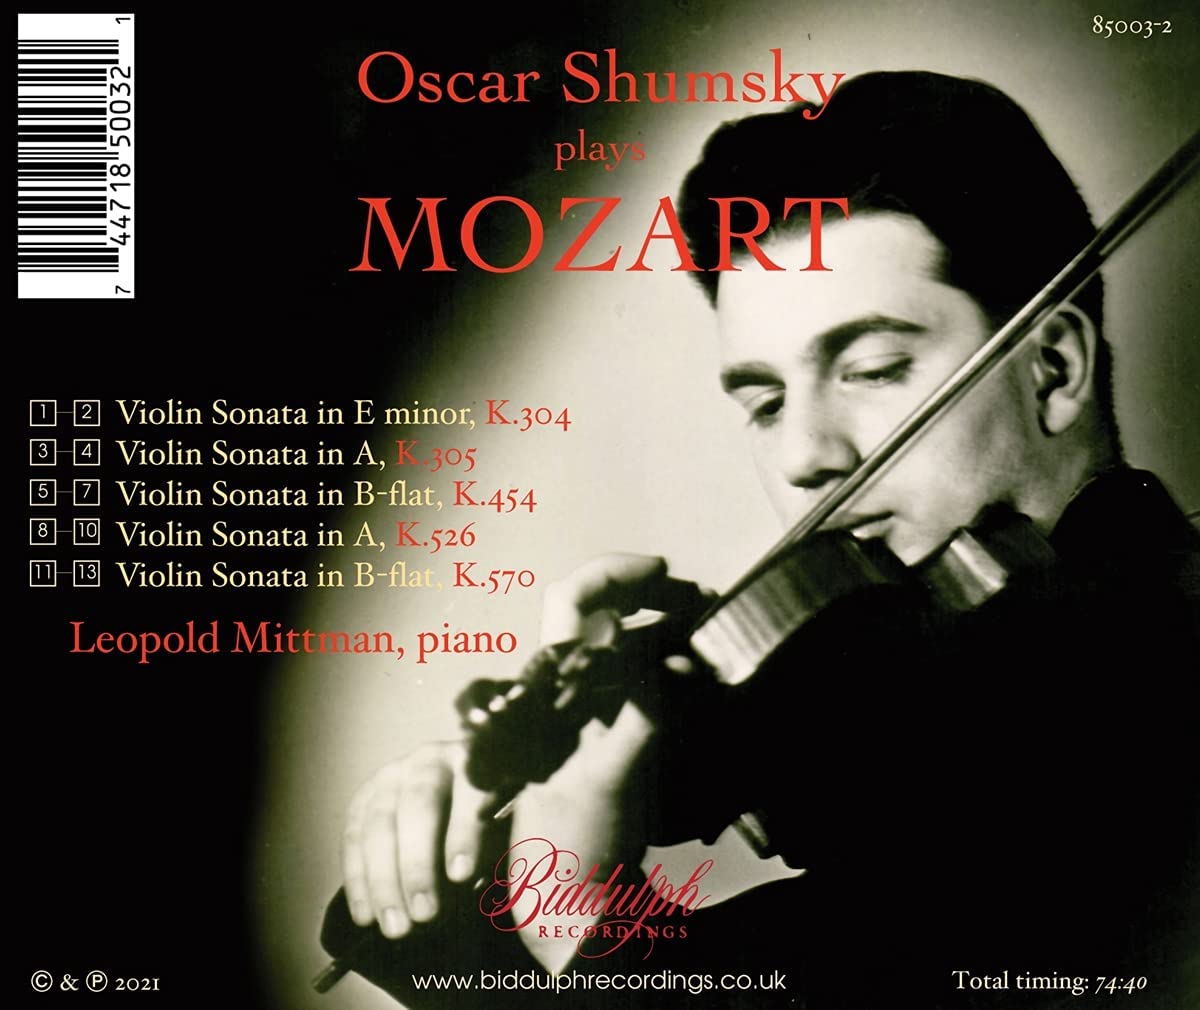 Oscar Shumsky 모차르트: 바이올린 소나타 (Mozart: Violin Sonatas K.304, K.305, K.454, K.526, K.570) 